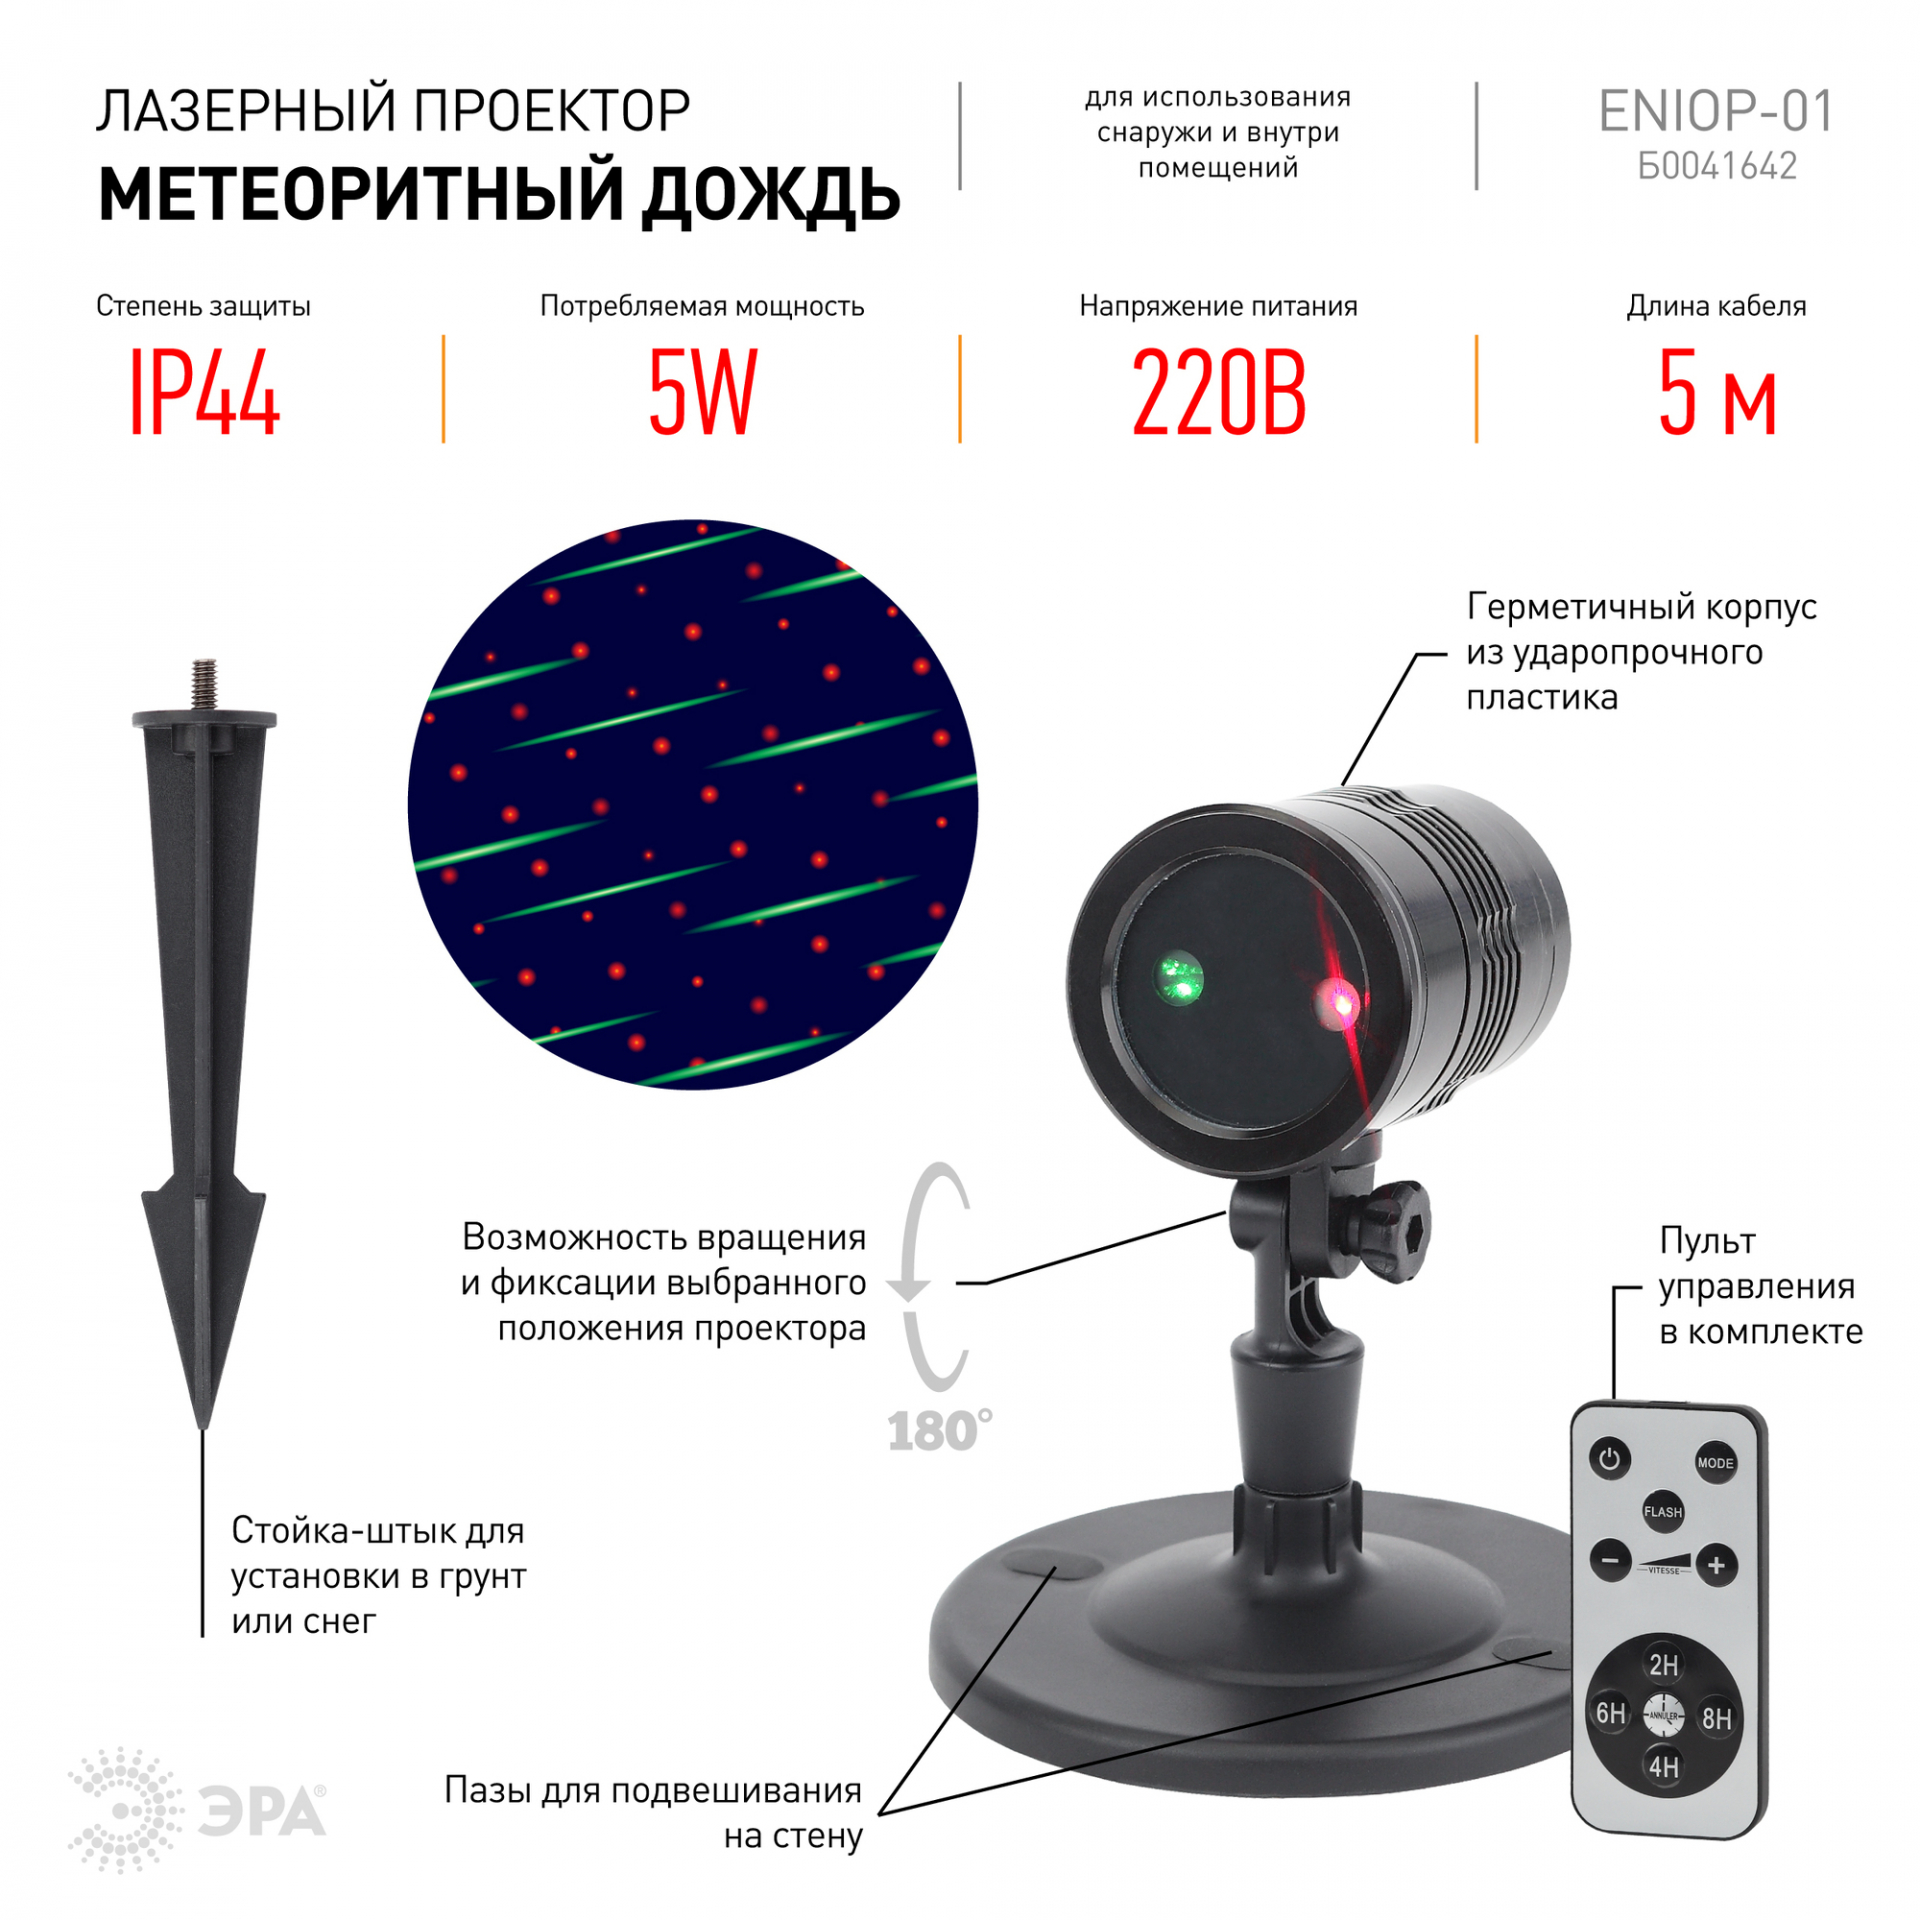 ENIOP-01 ЭРА Проектор Laser Метеоритный дождь мультирежим 2 цвета, 220V, IP44 (16/288) (Б0041642)